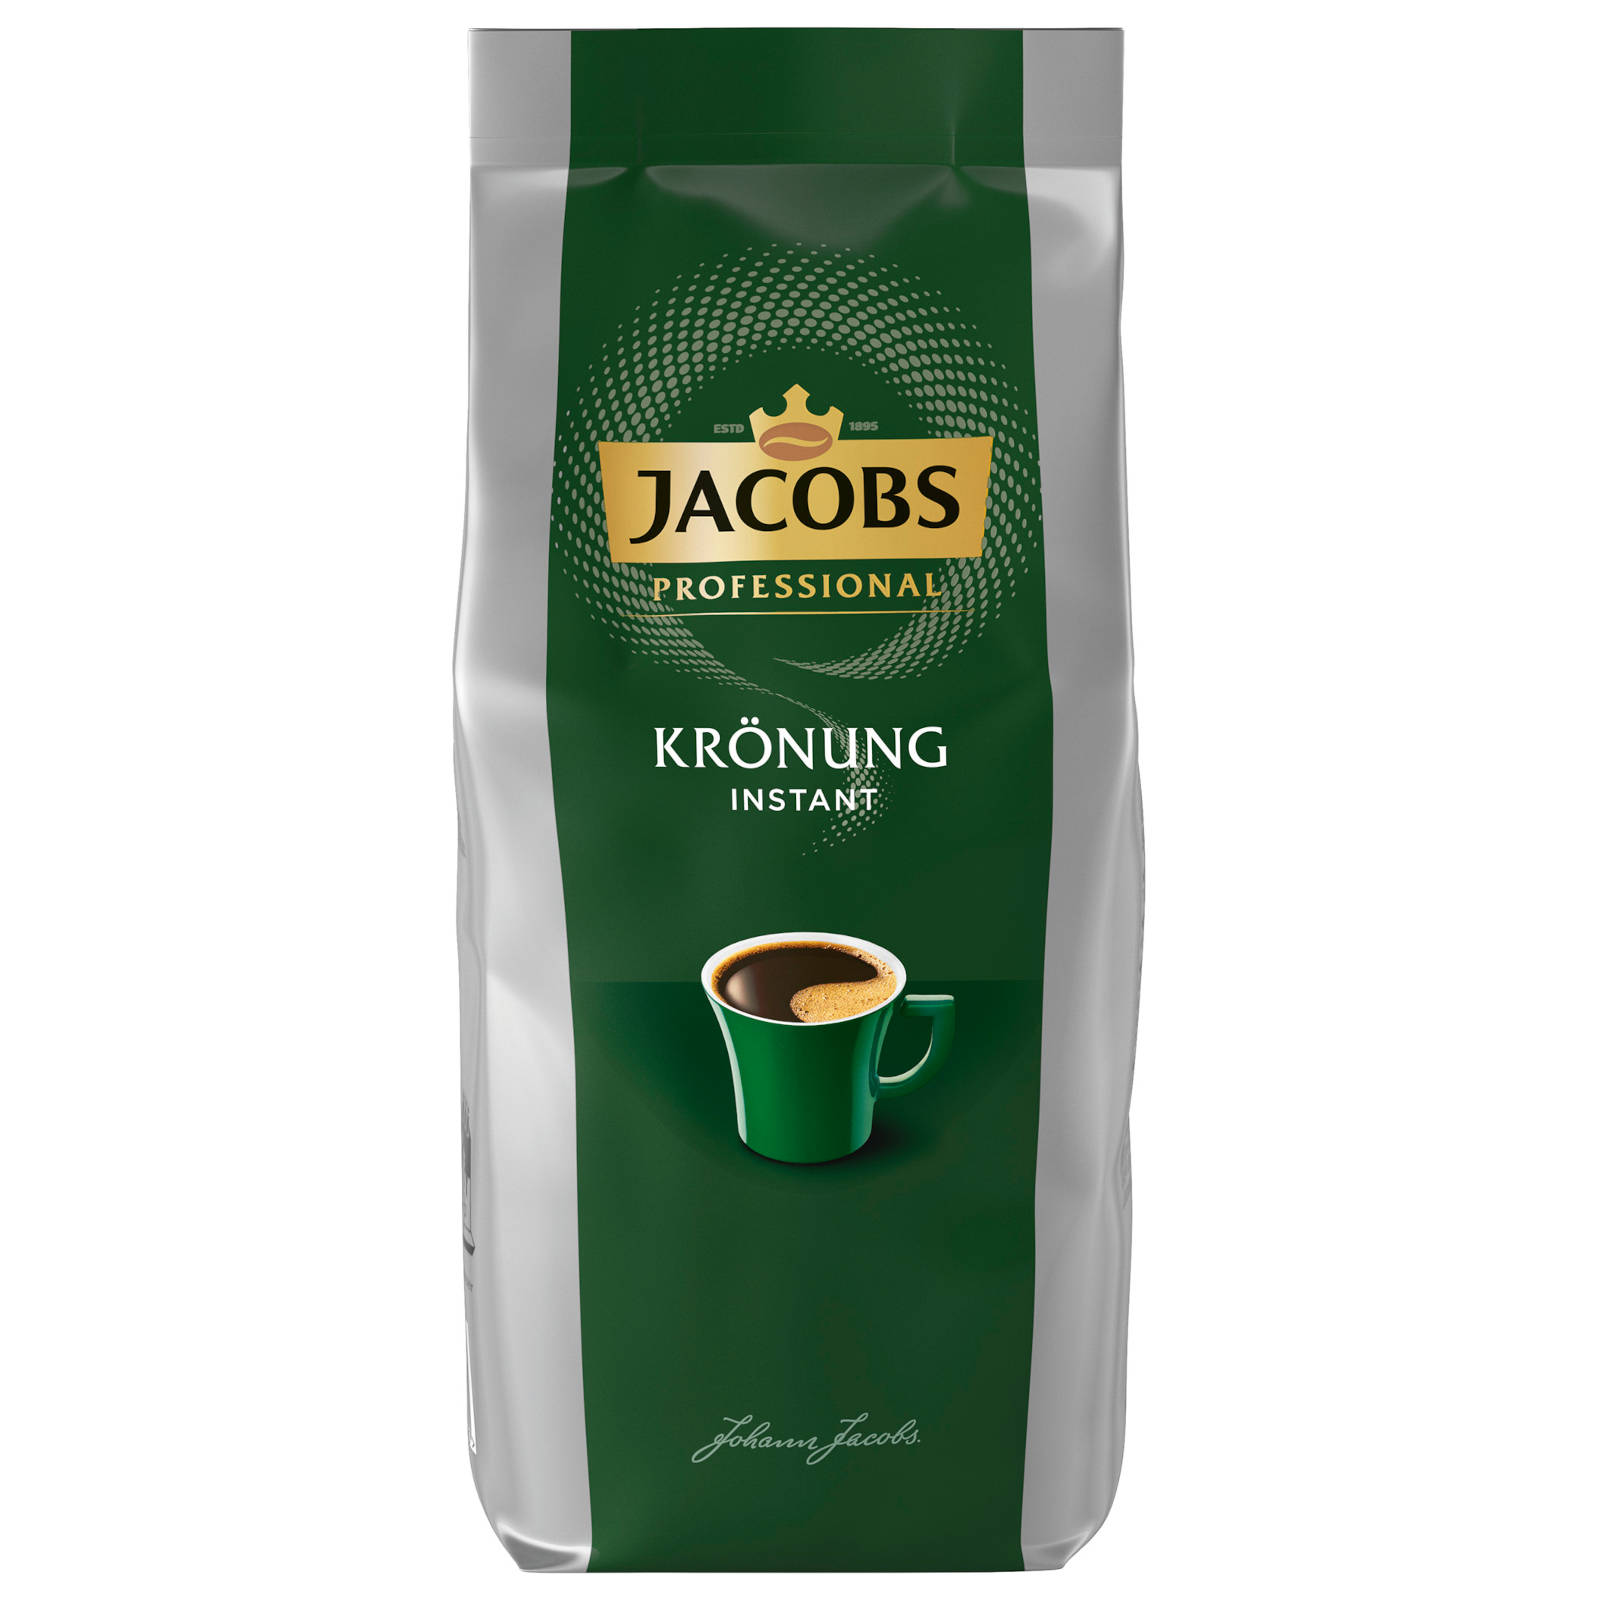 Krönung Professional Wasser heißem Instantkaffee 8x500 auflösen, g Heißgetränkeautomaten) JACOBS (In